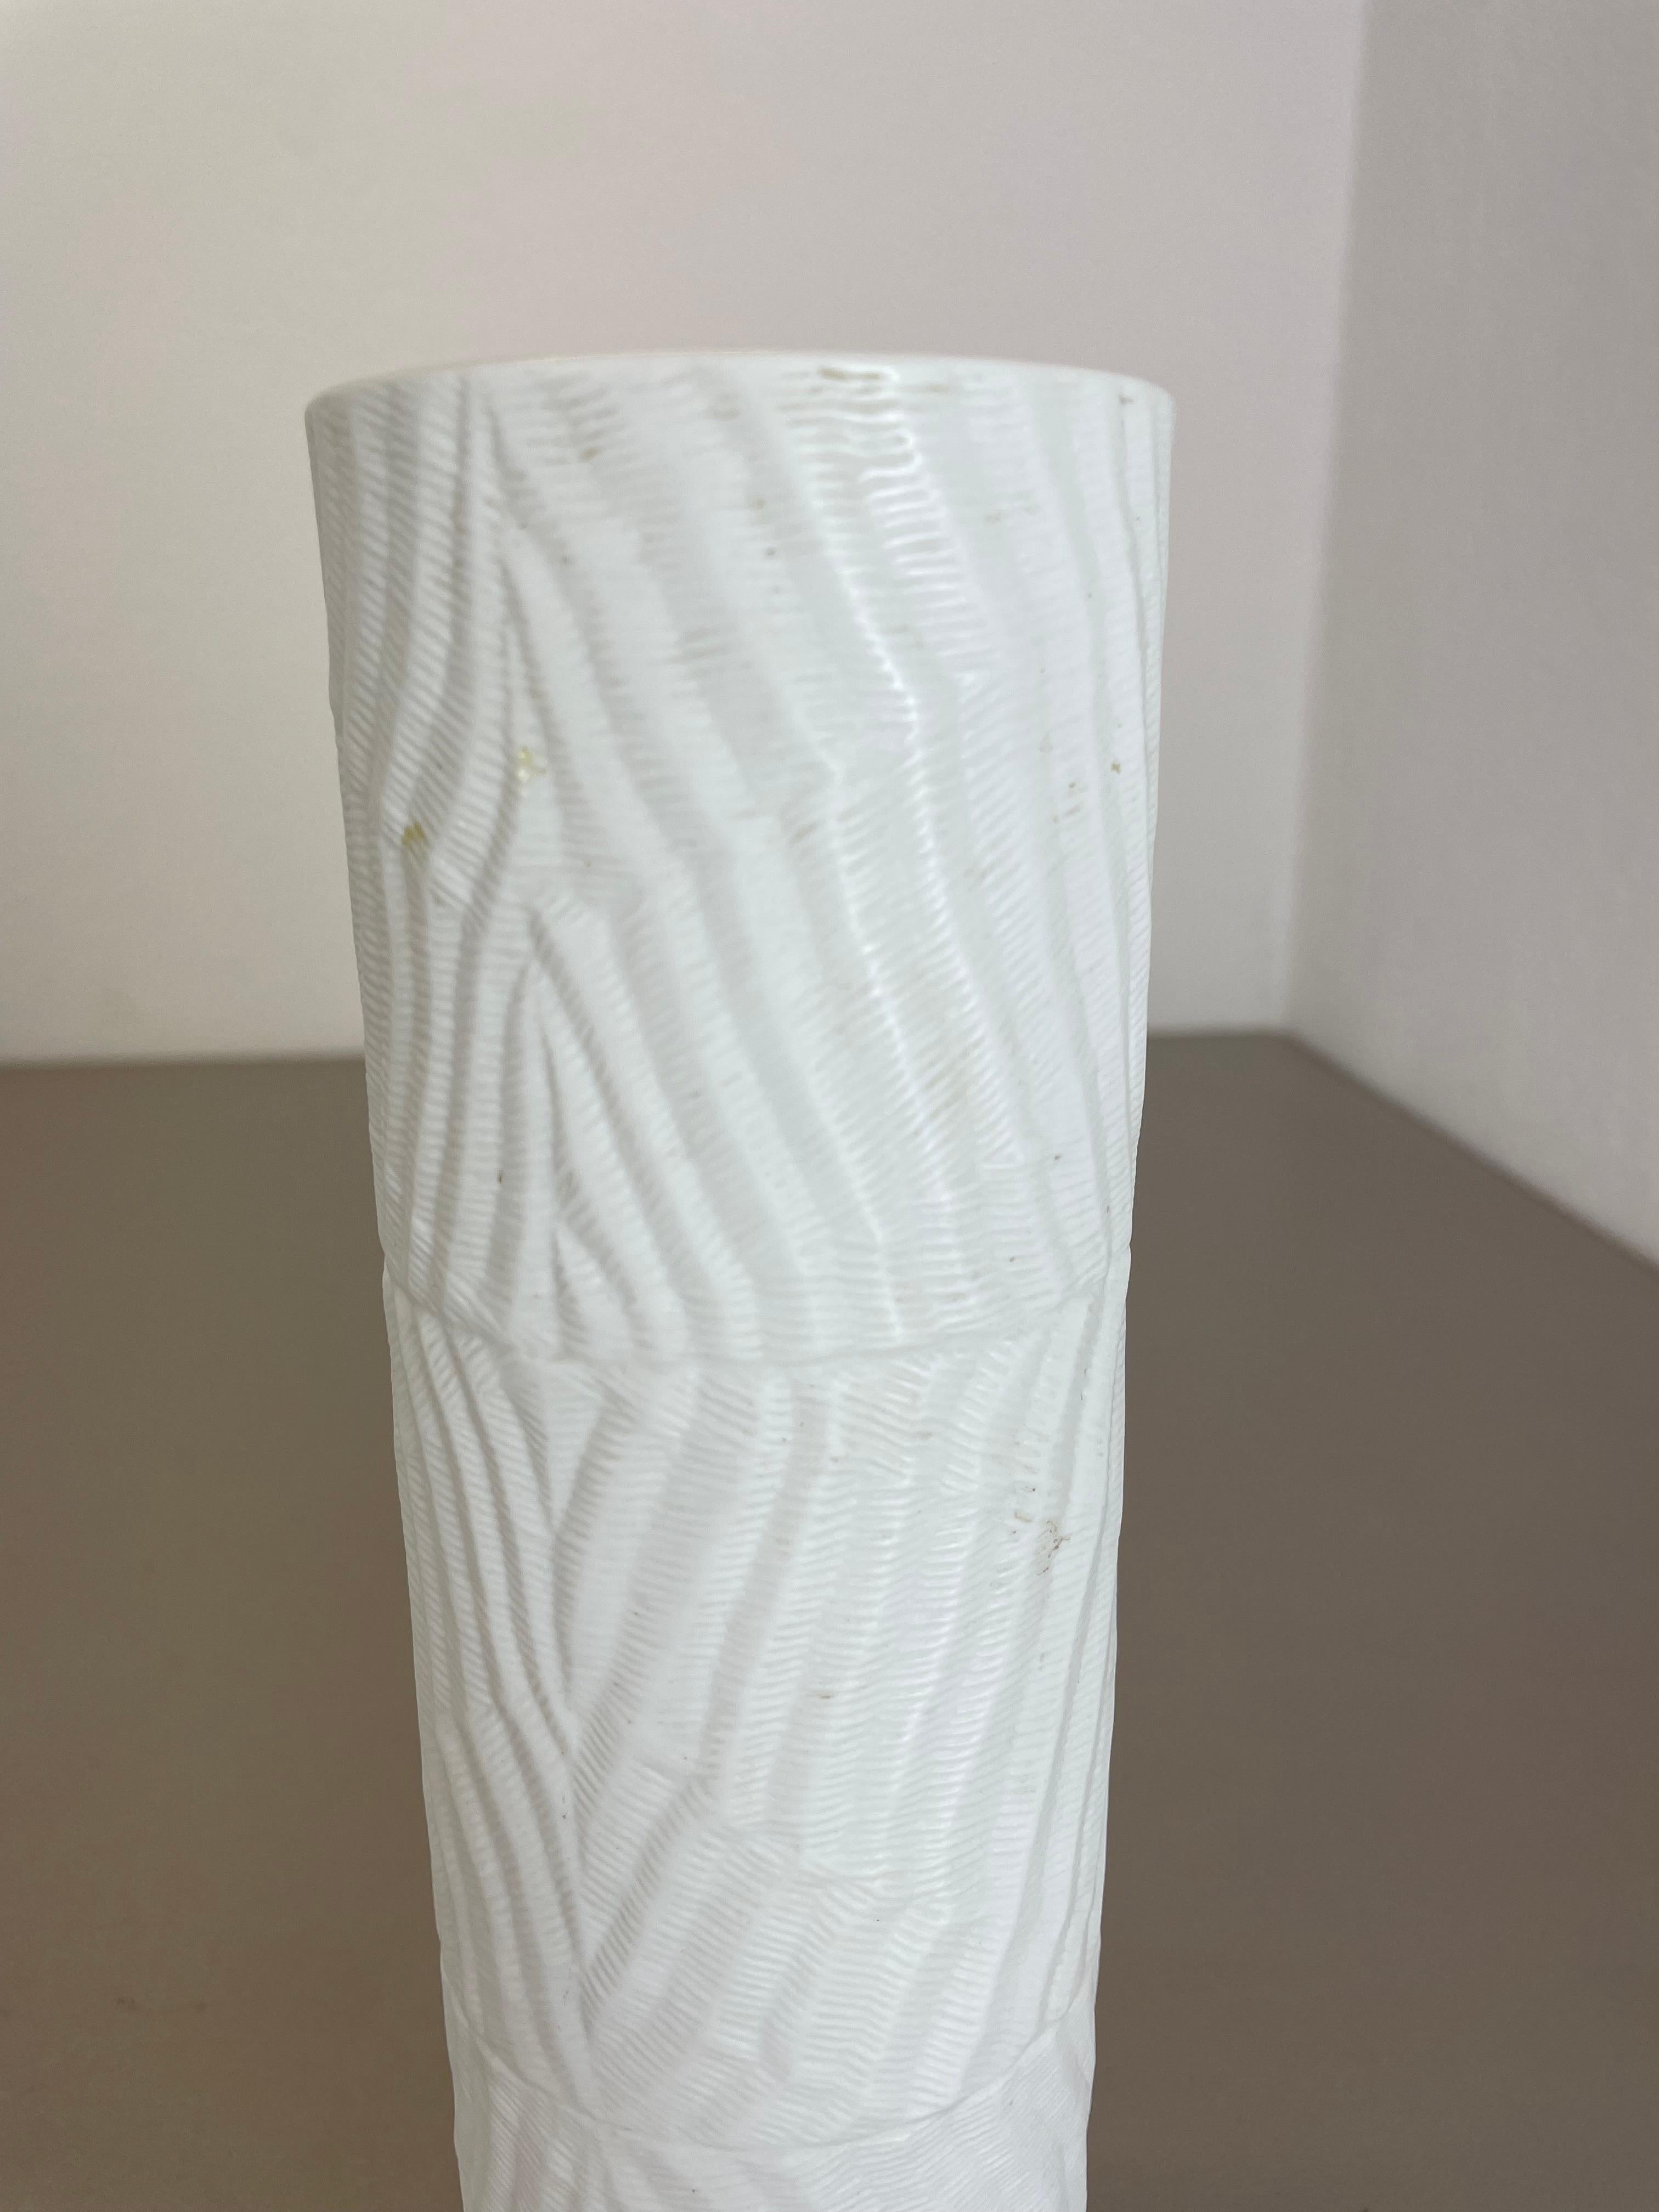 Large 23cm OP Art Vase Porcelain Vase by Martin Freyer for Rosenthal, Germany For Sale 8